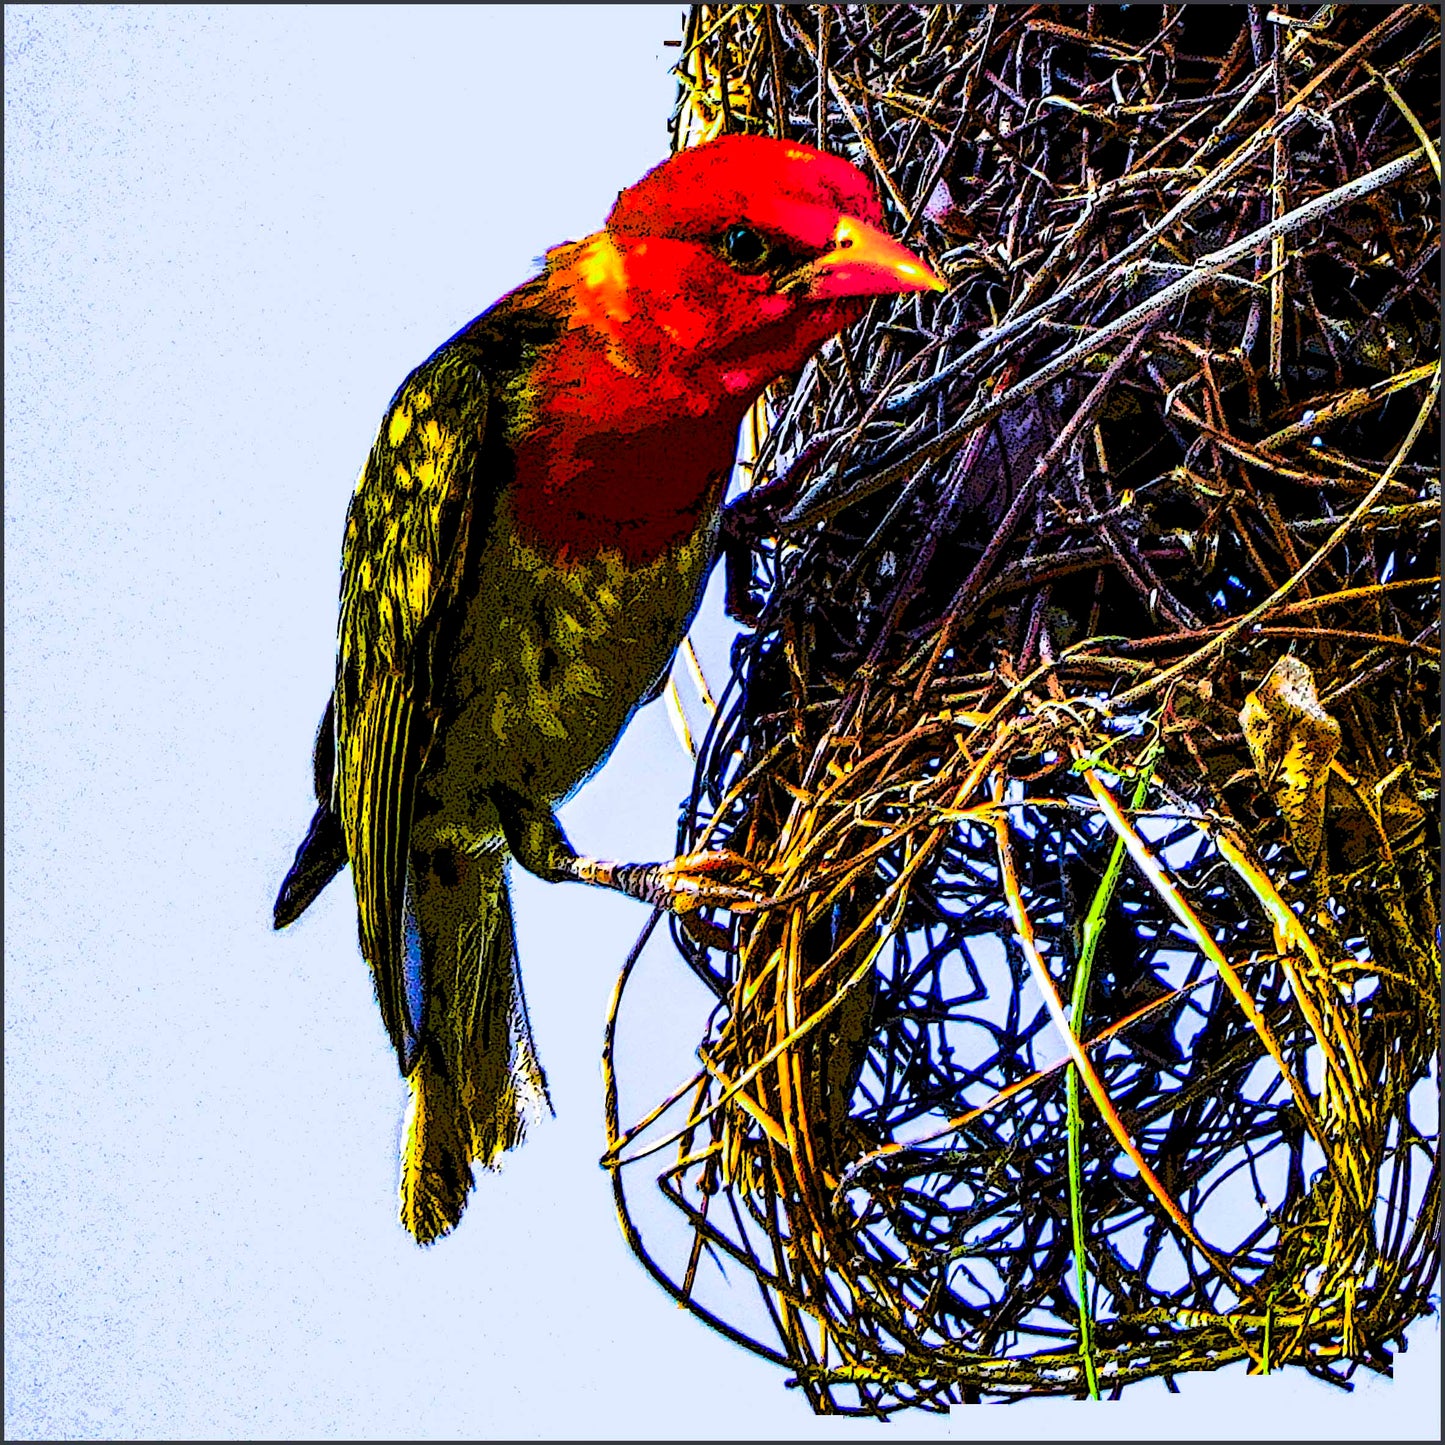 Red Headed Weaver